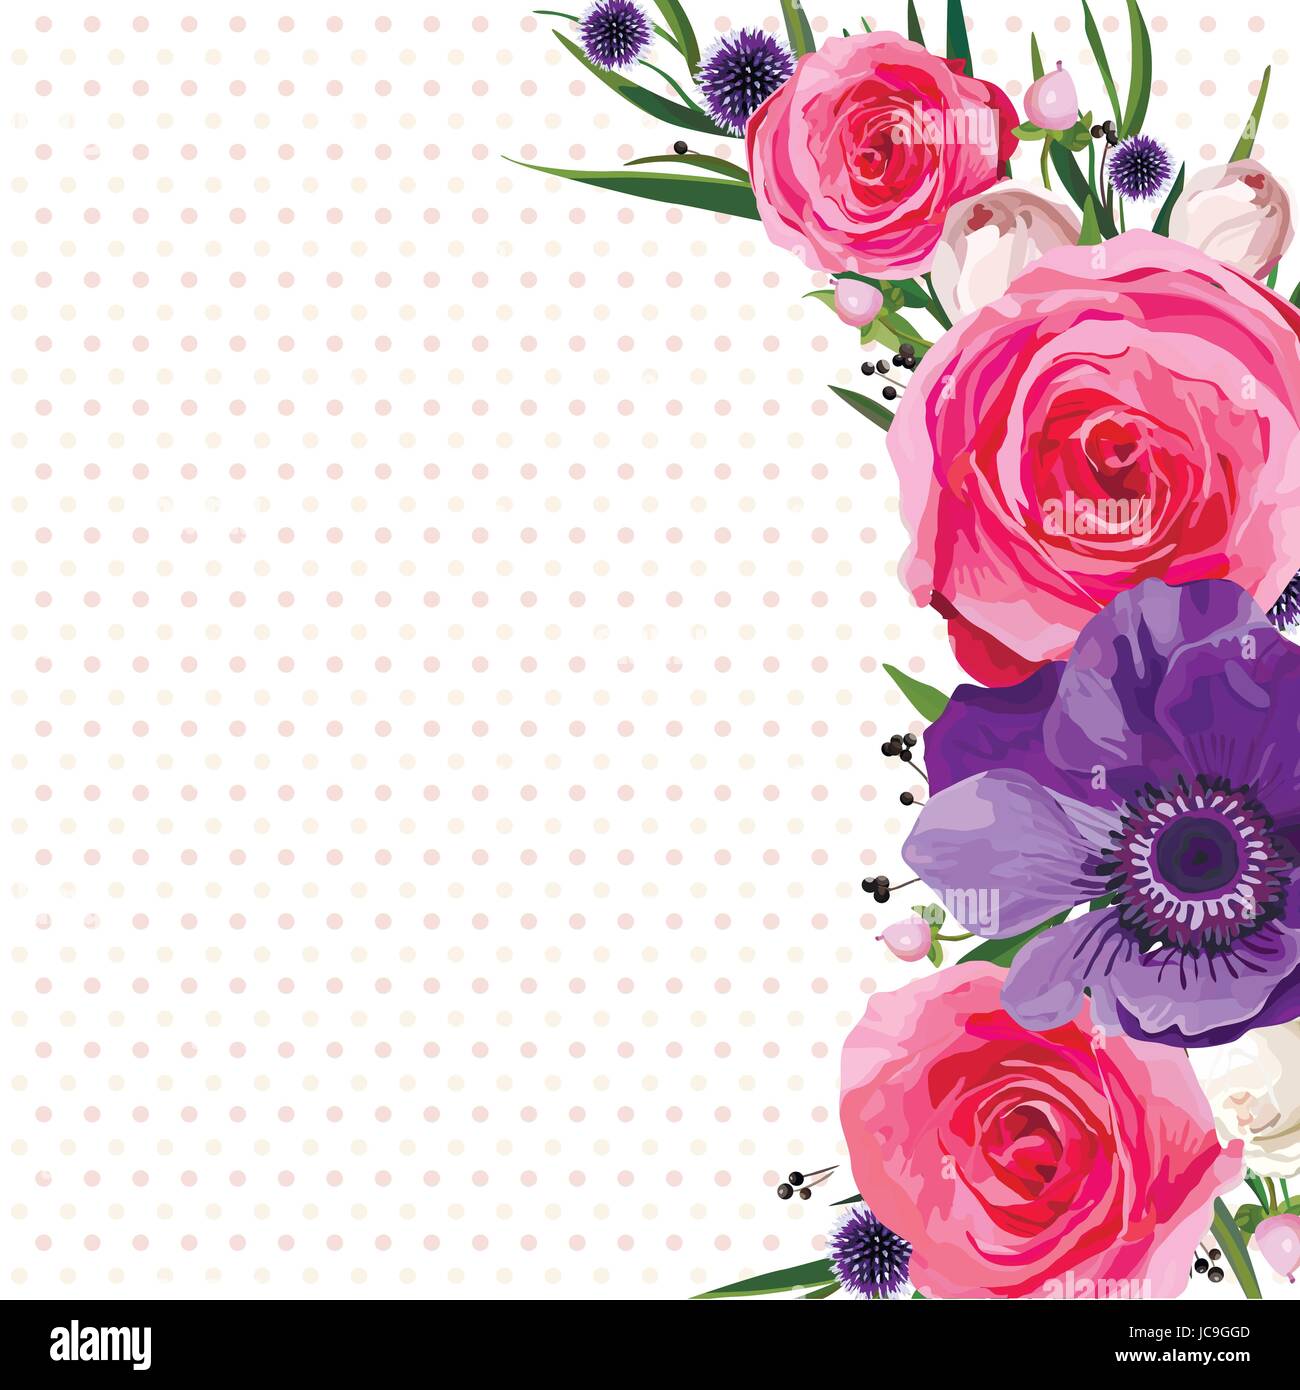 Fiore fiori luminosi hot rosa rosa Anemone thistle Agonis lascia bella bella primavera estate bouquet illustrazione vettoriale.vista superiore square elegante w Illustrazione Vettoriale